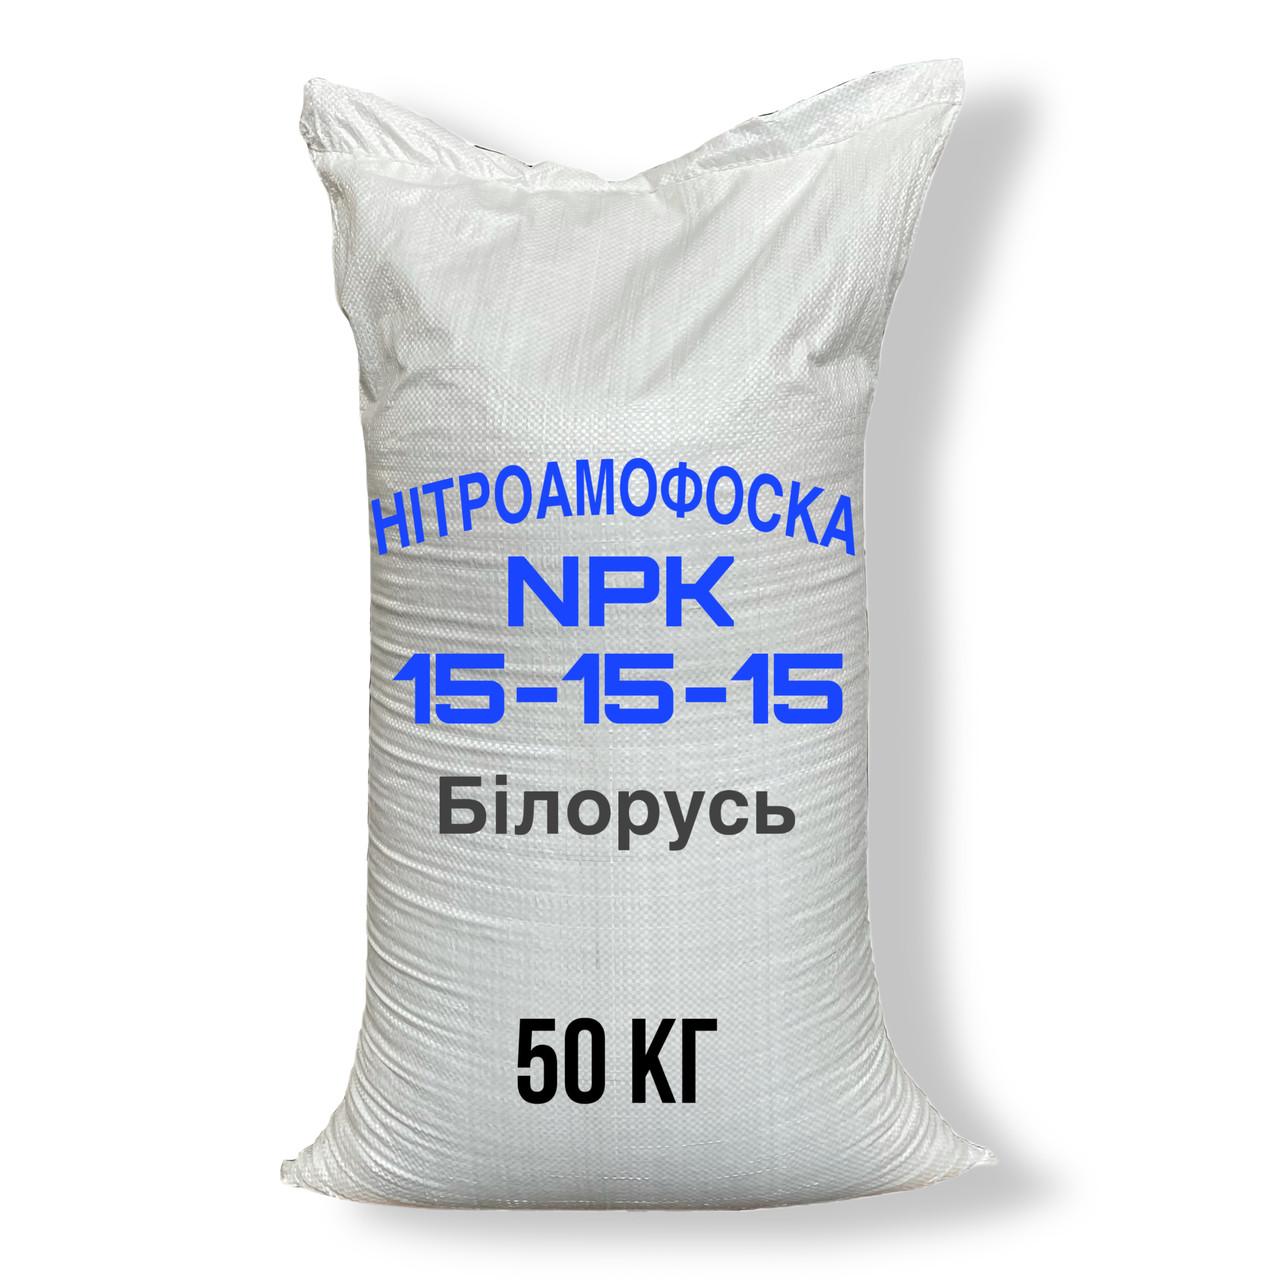 Нітроамофоска NPK 15-15-15, мішки по 50кг (Білорусь)